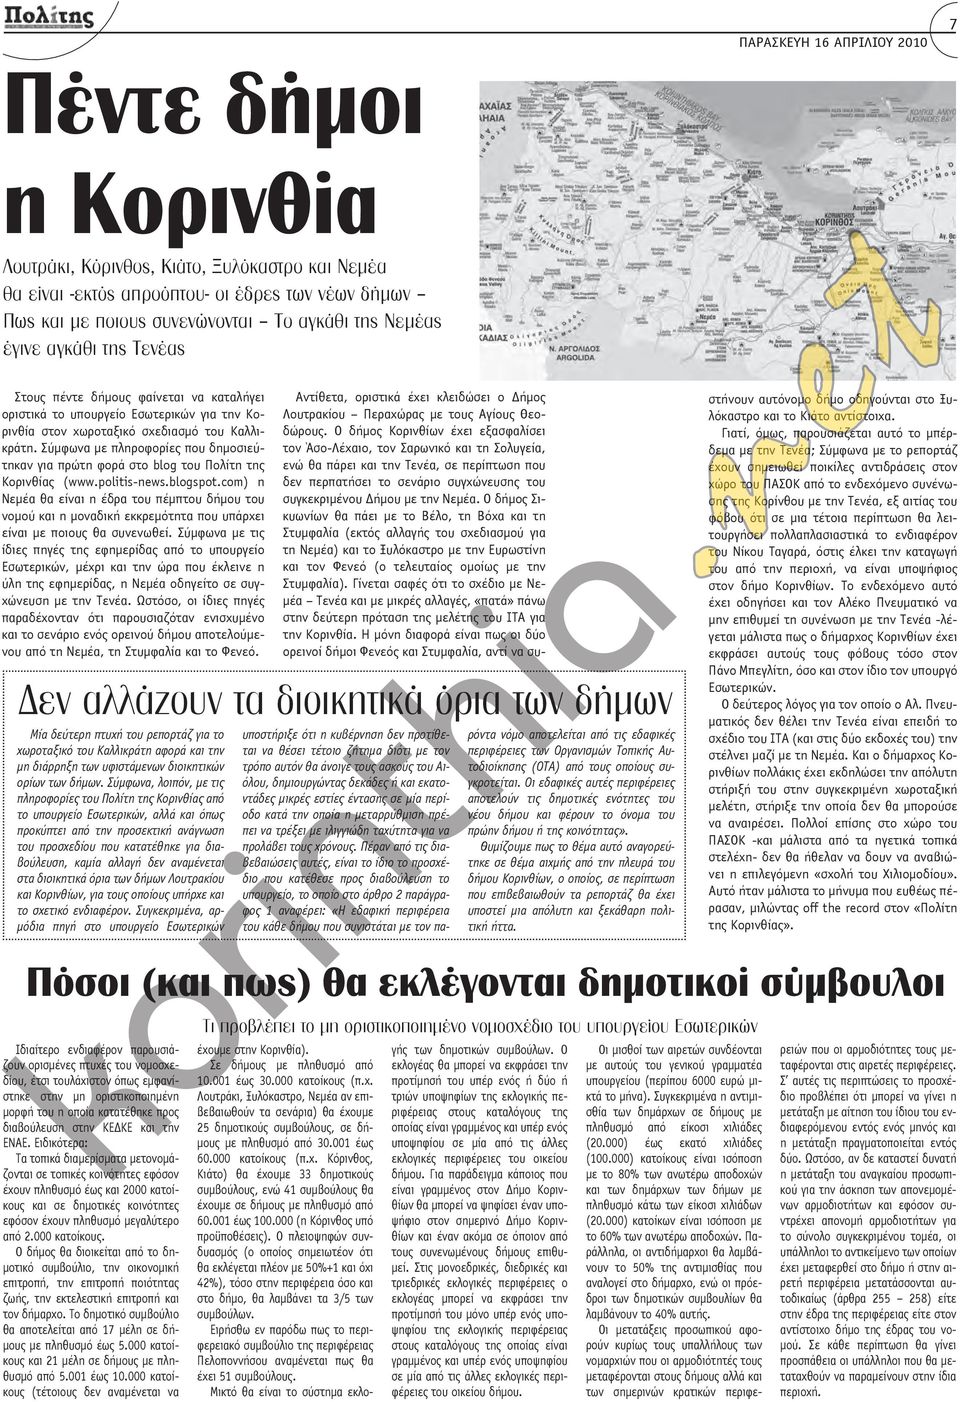 Σύμφωνα με πληροφορίες που δημοσιεύτηκαν για πρώτη φορά στο blog του Πολίτη της Κορινθίας (www.poliis-news.blogspo.